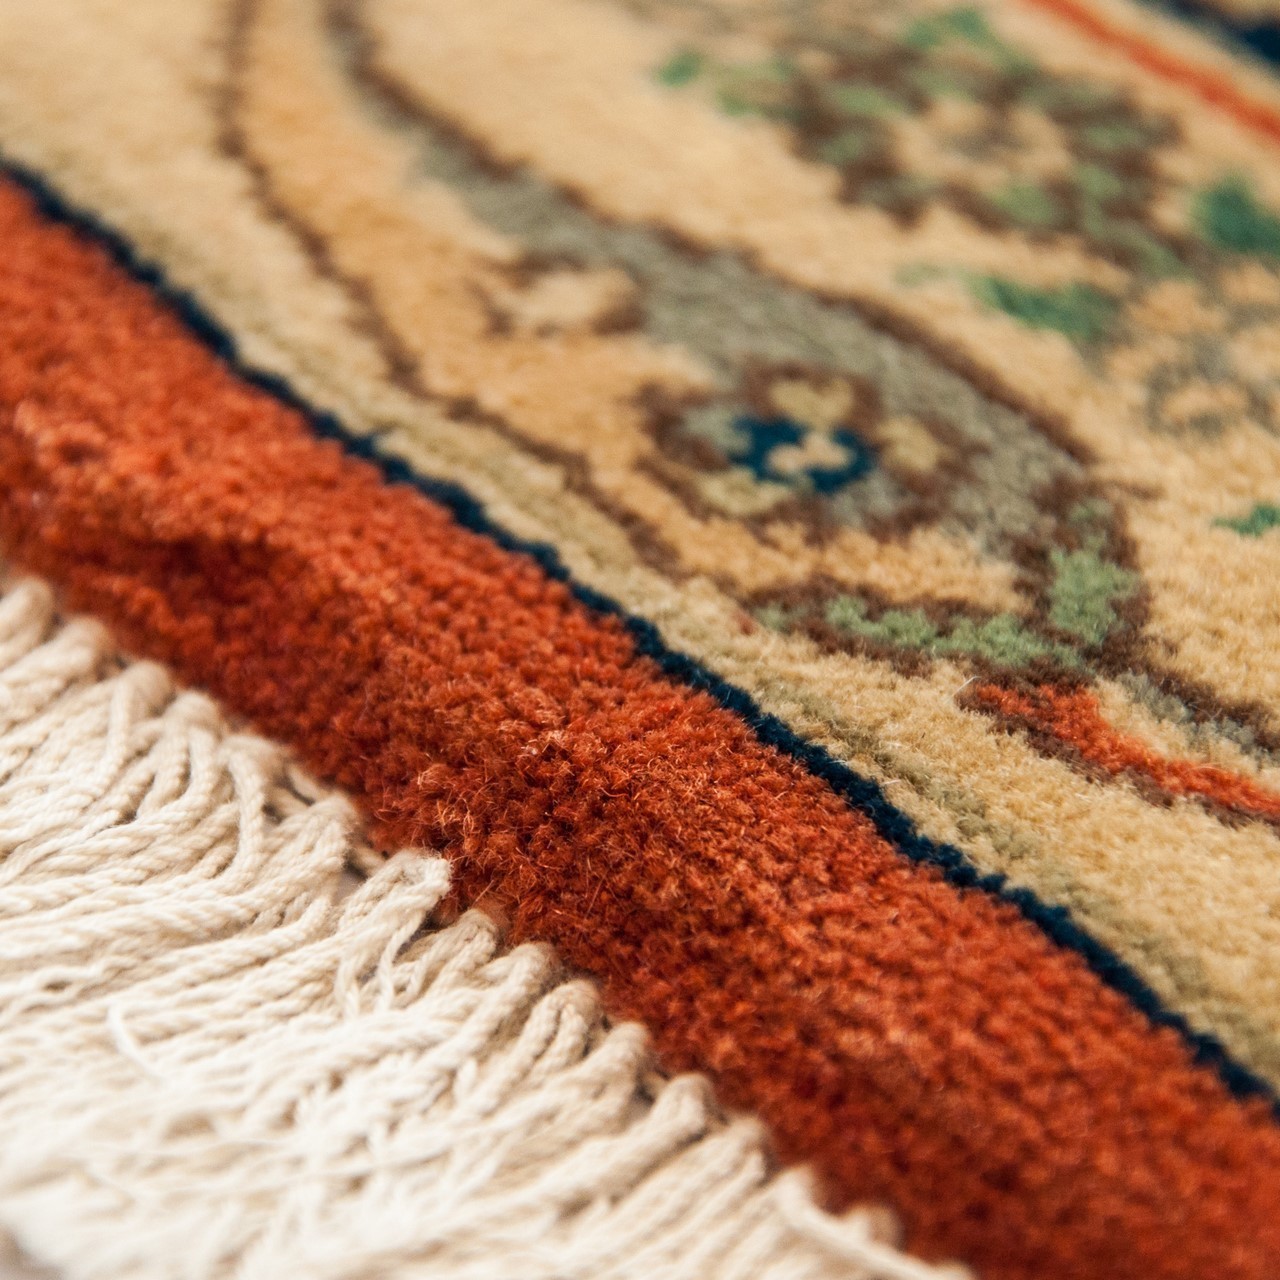 Ferahan Carpet Ref 101947